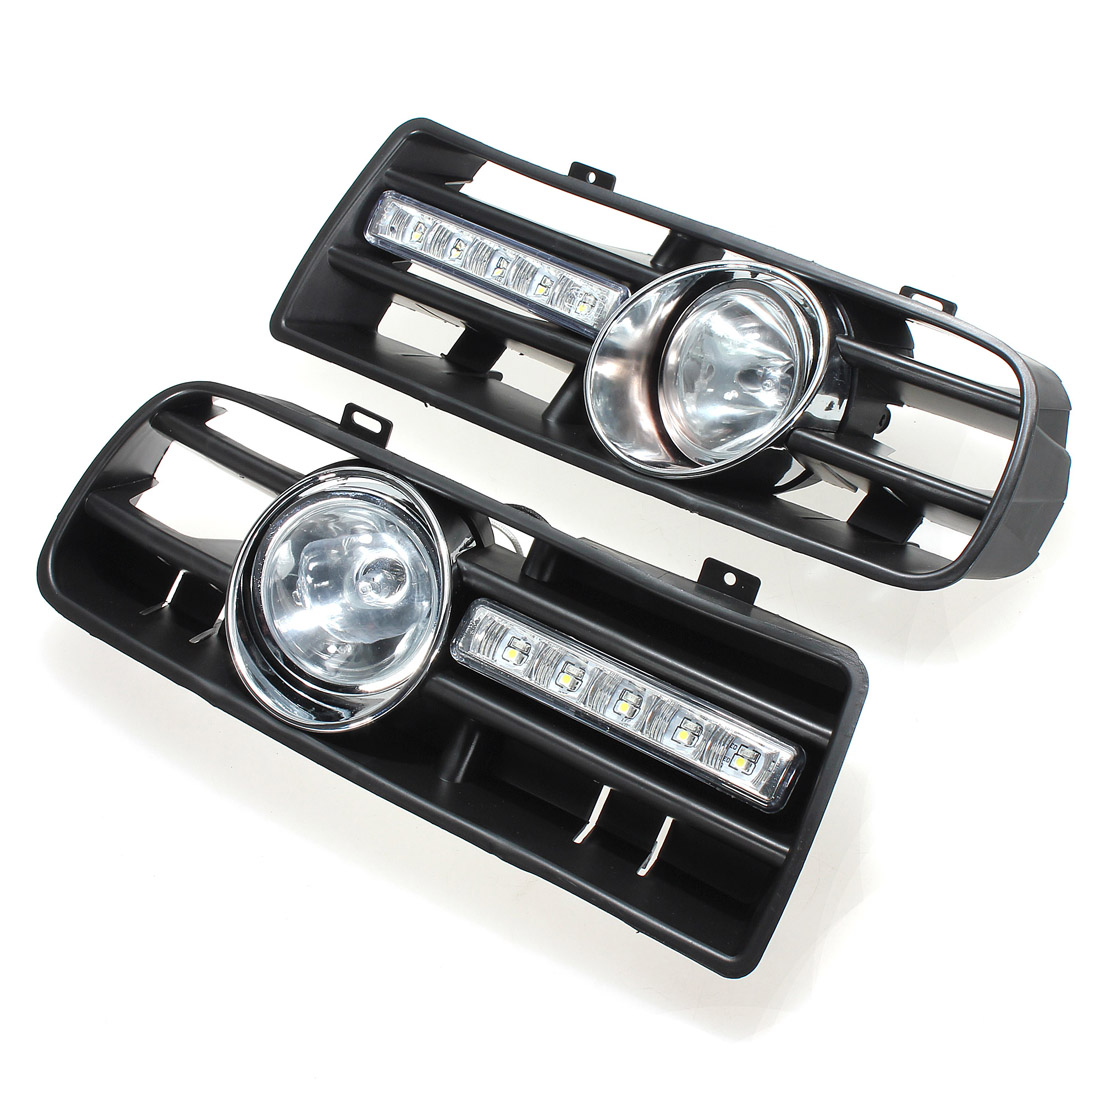 Luzes de nevoeiro da grade do amortecedor dianteiro do carro DRL lâmpada de condução com interruptor e arnês para VW Golf MK4 1997-2006 